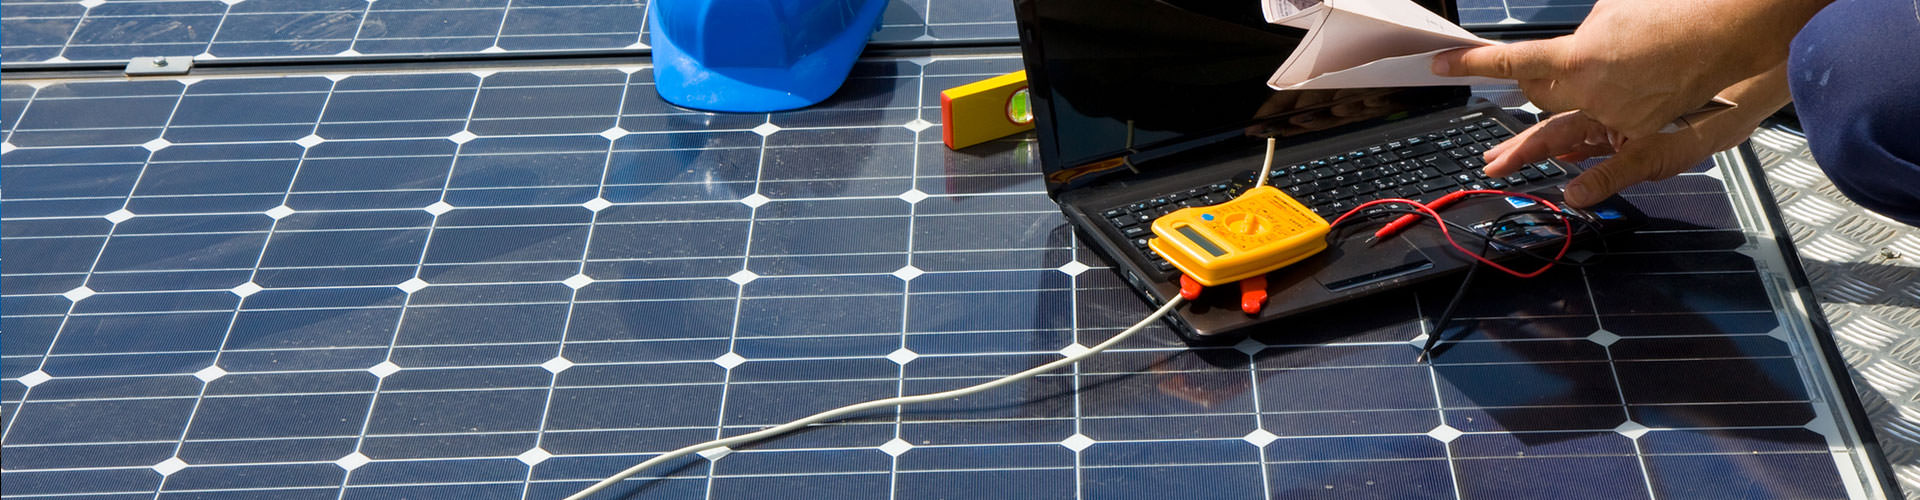 Solaranlagen professionell reinigen lassen - PV Service GmbH